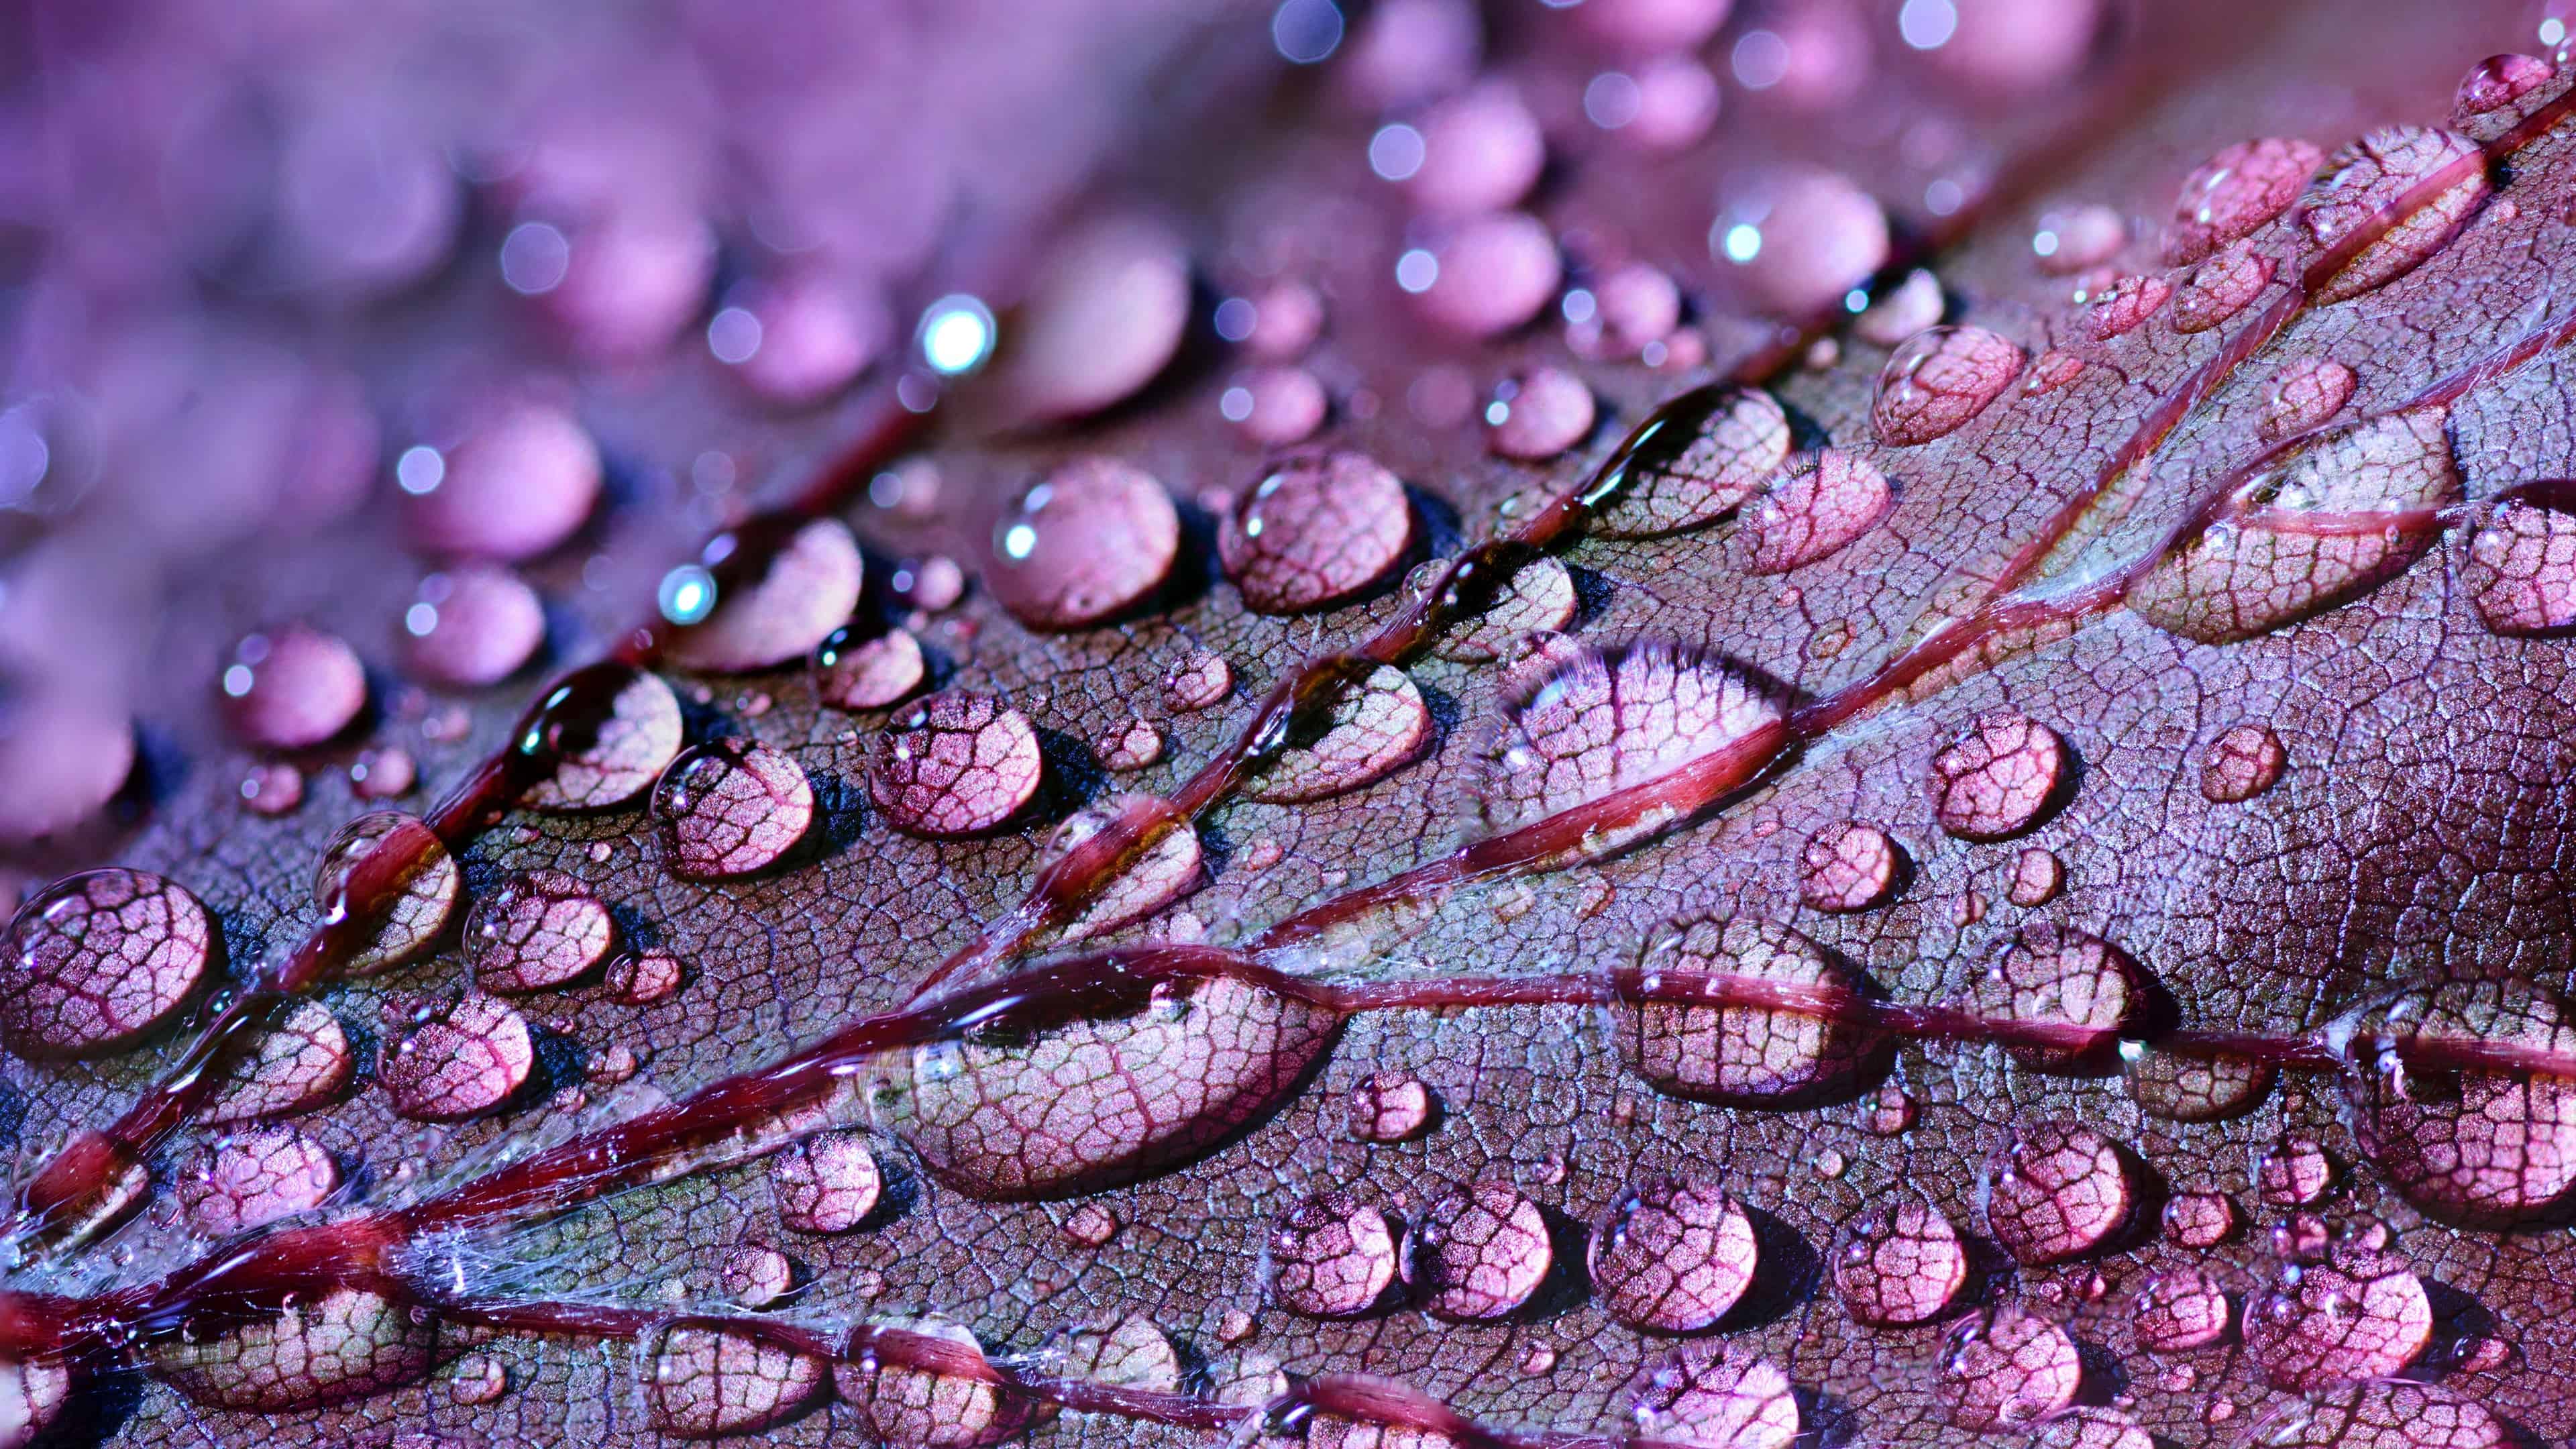 Water Drops On Leaf UHD 4K Wallpaper | Pixelz